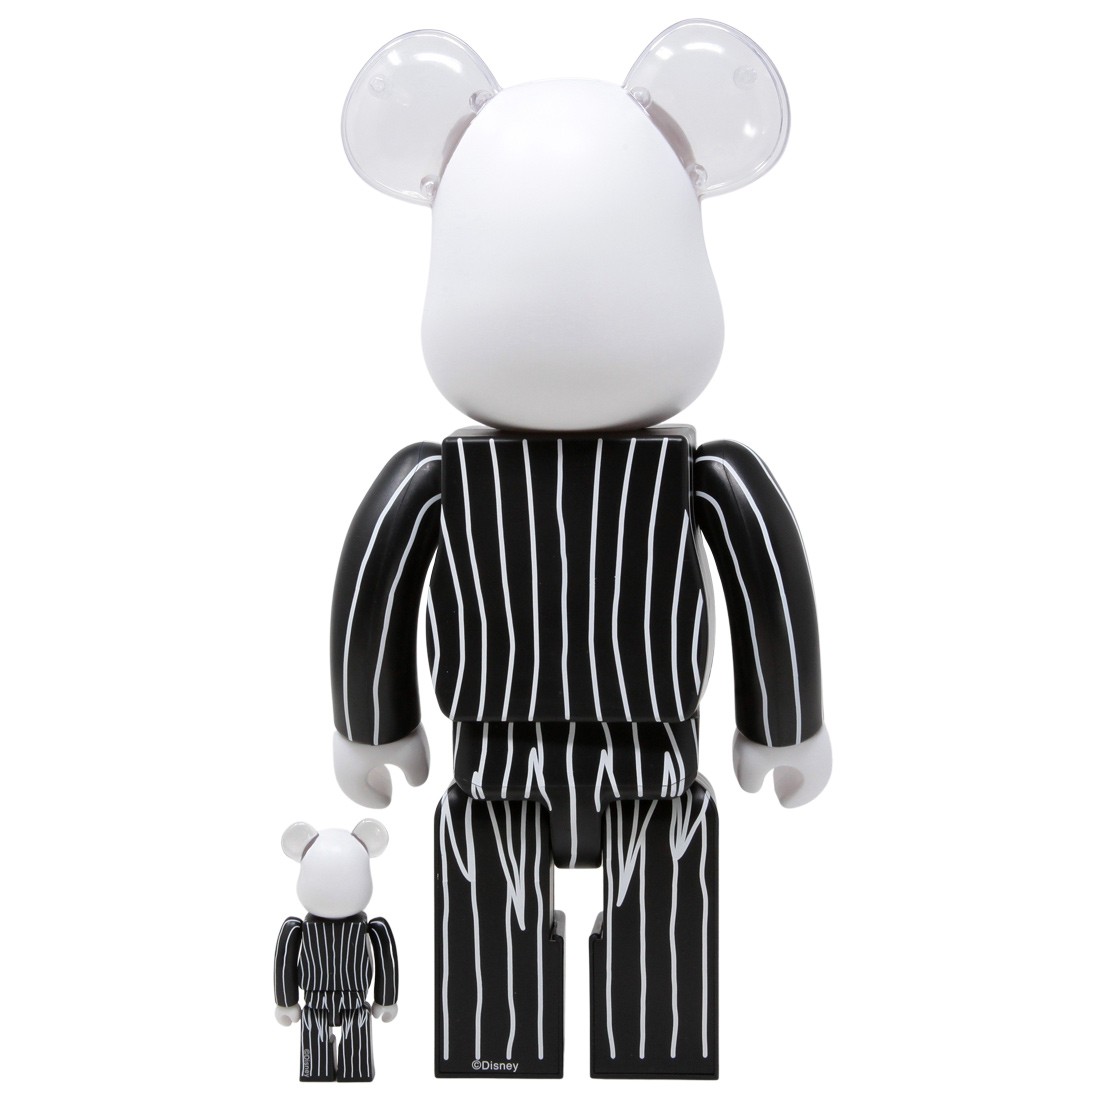 Medicom Disney The Nightmare Before Christmas Jack Skellington 2021 100%  400% Bearbrick Figure Set (black)